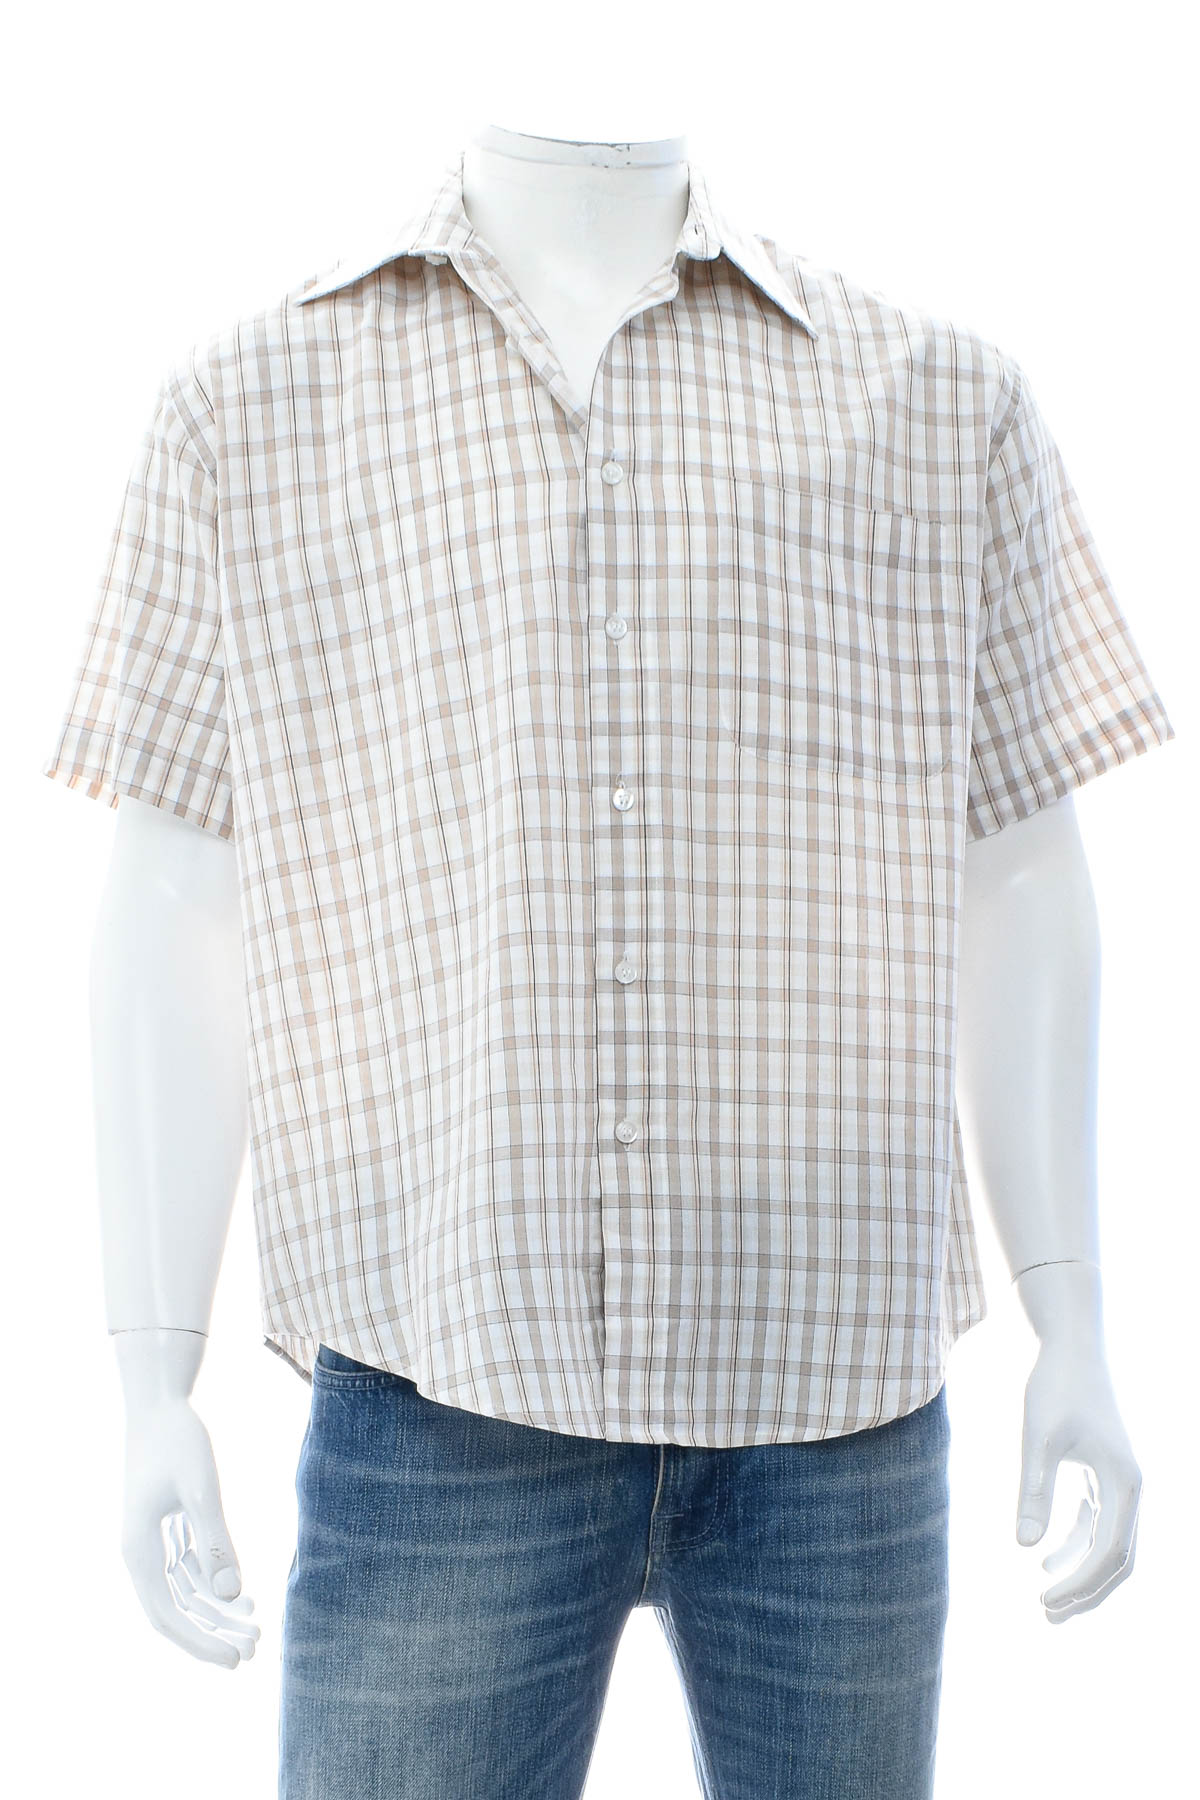 Ανδρικό πουκάμισο - MAXCLUSIV - 0